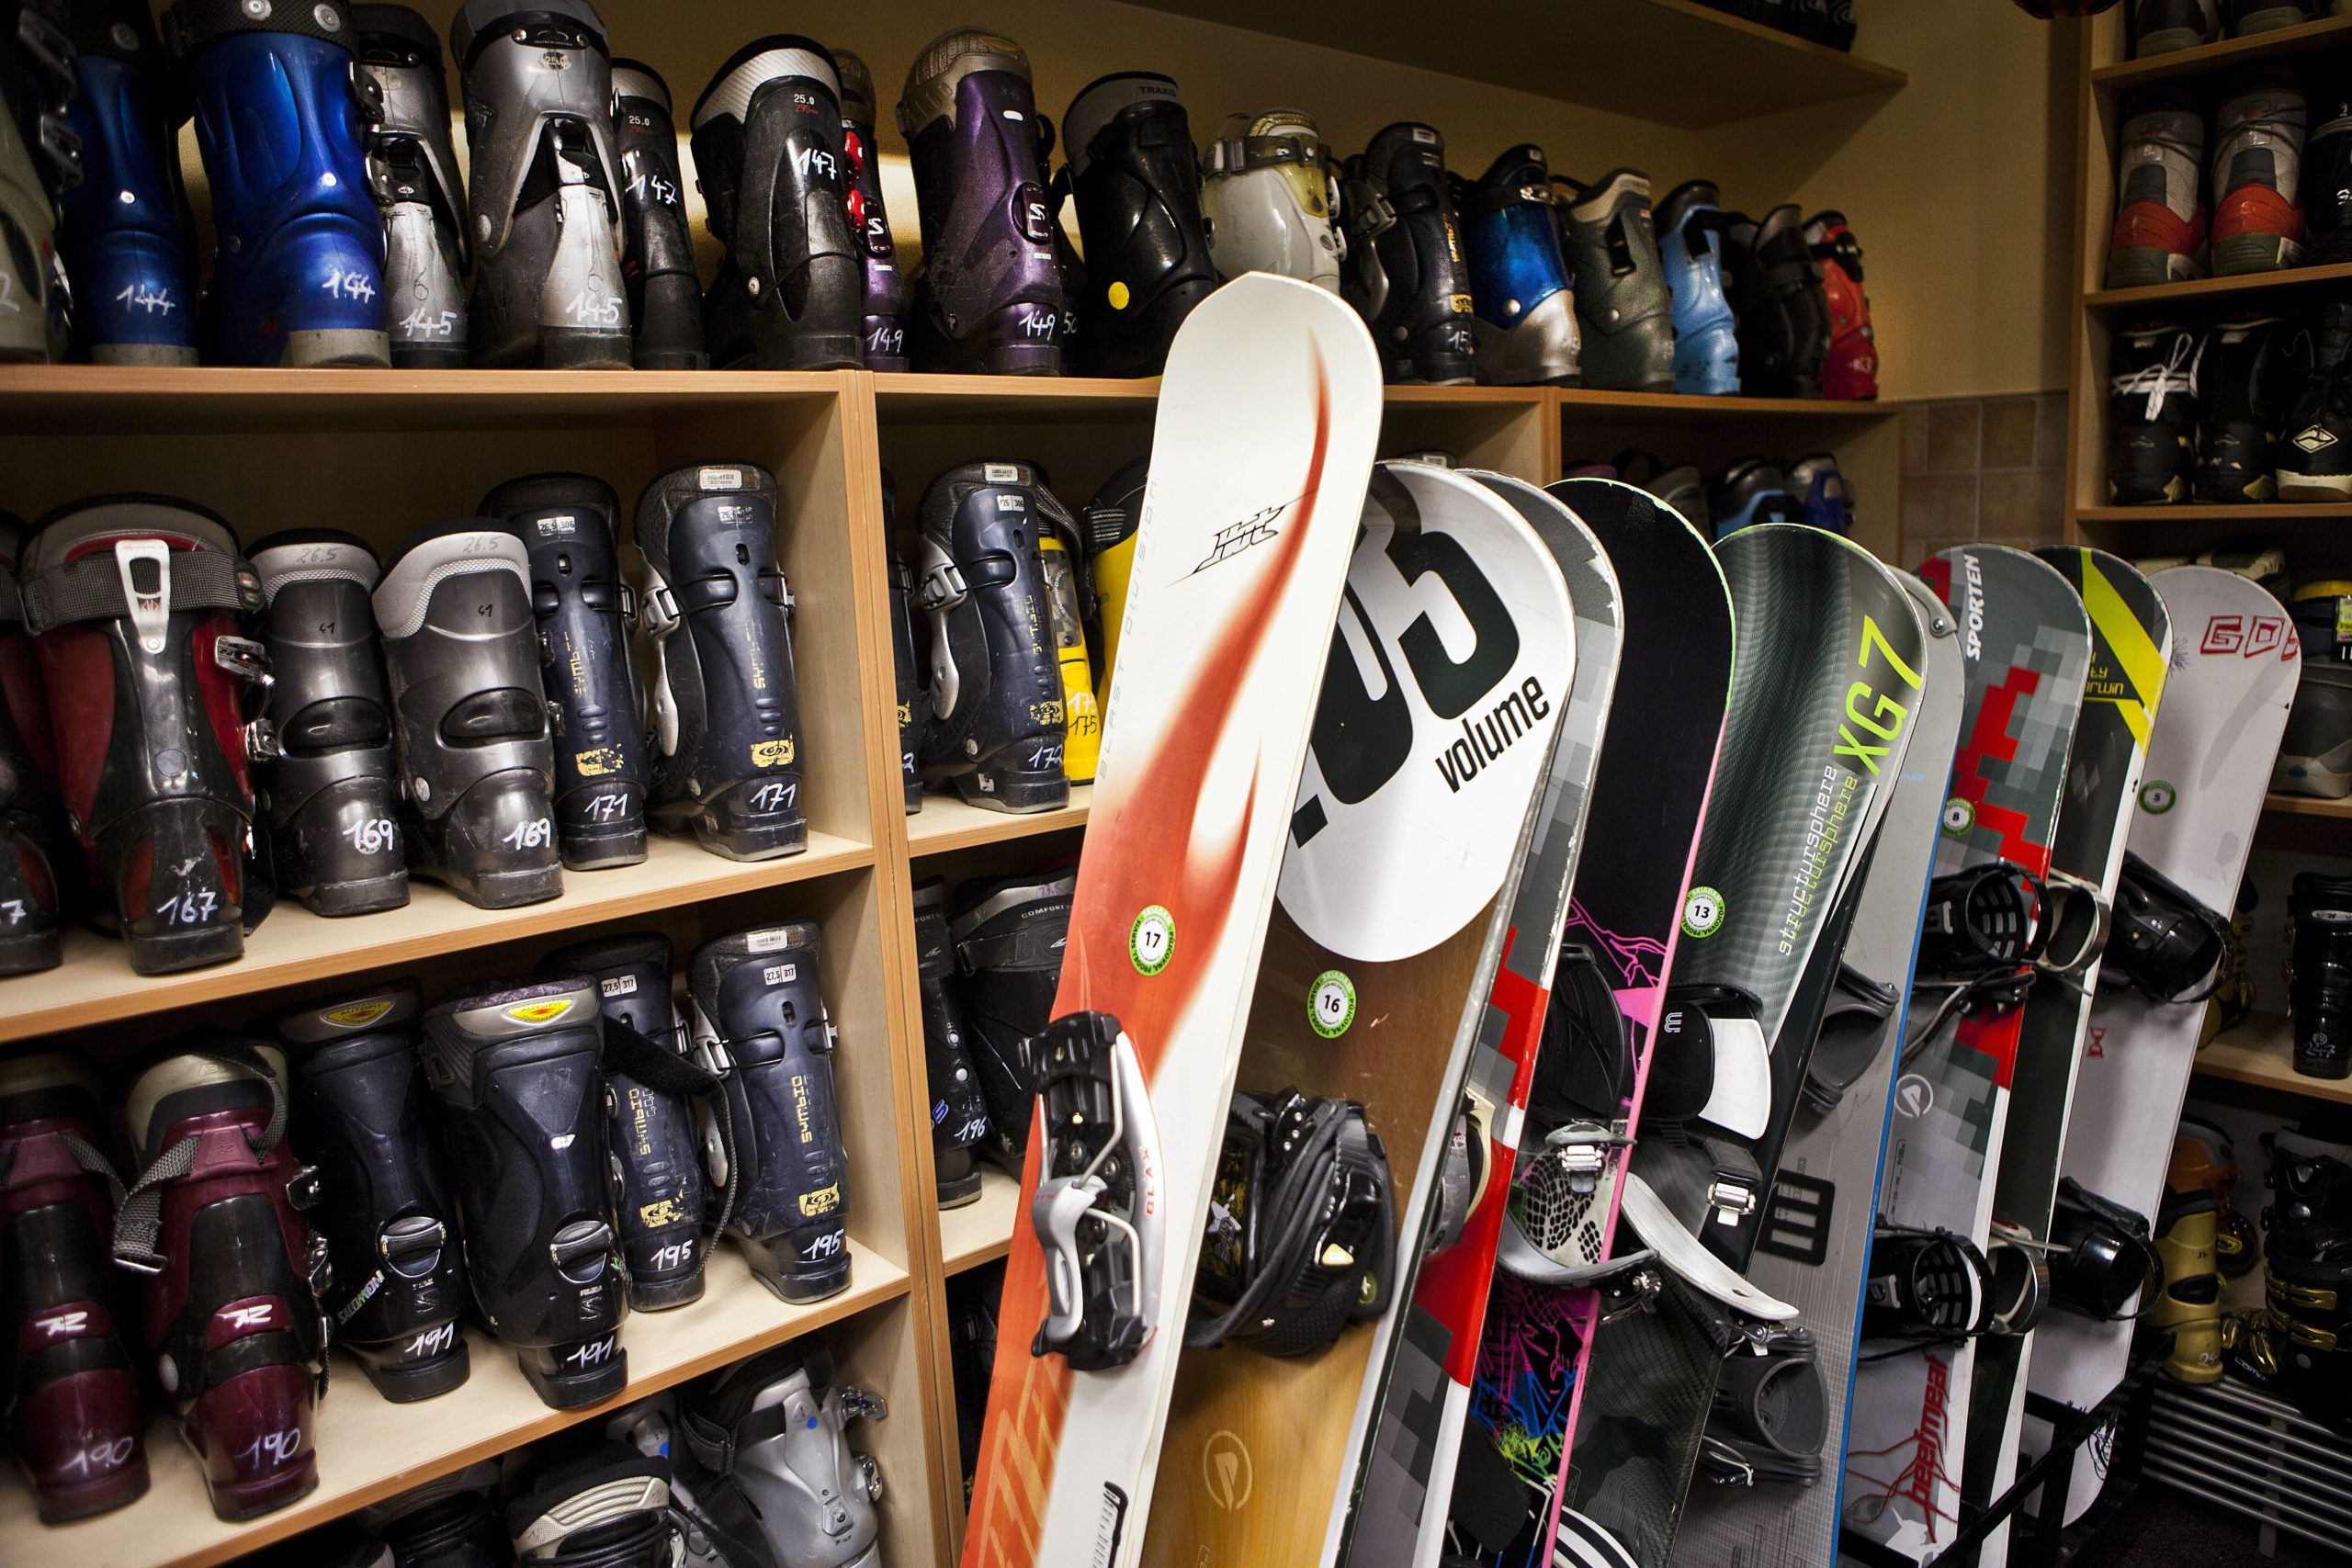 Schweiz in Berlin Wer keine eigene Wintersportausrüstung besitzt, kann sich für den nächsten Ski- oder Snowboard-Urlaub das nötige Equipment bei Boarderline Berlin leihen.